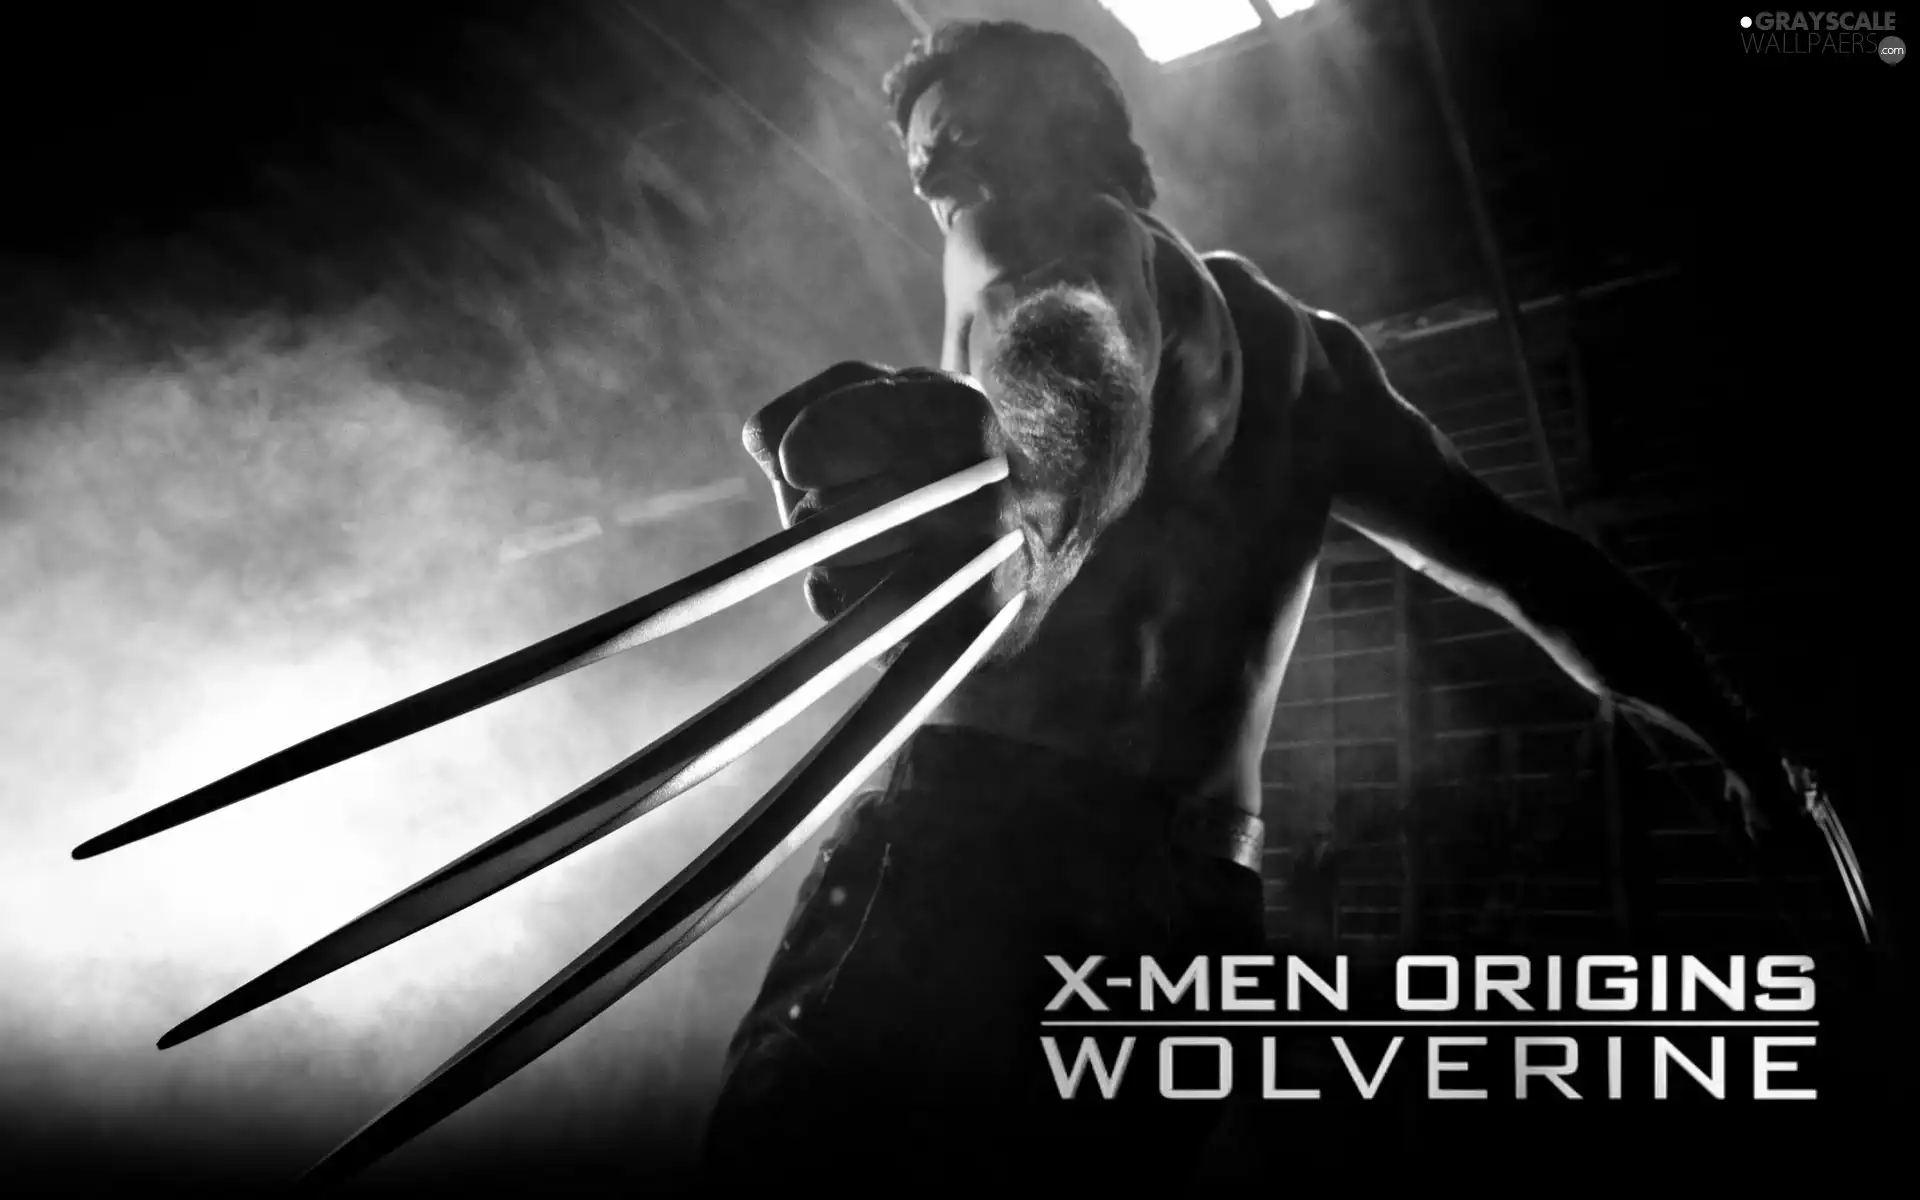 X-Men Wolverine Origins, claws